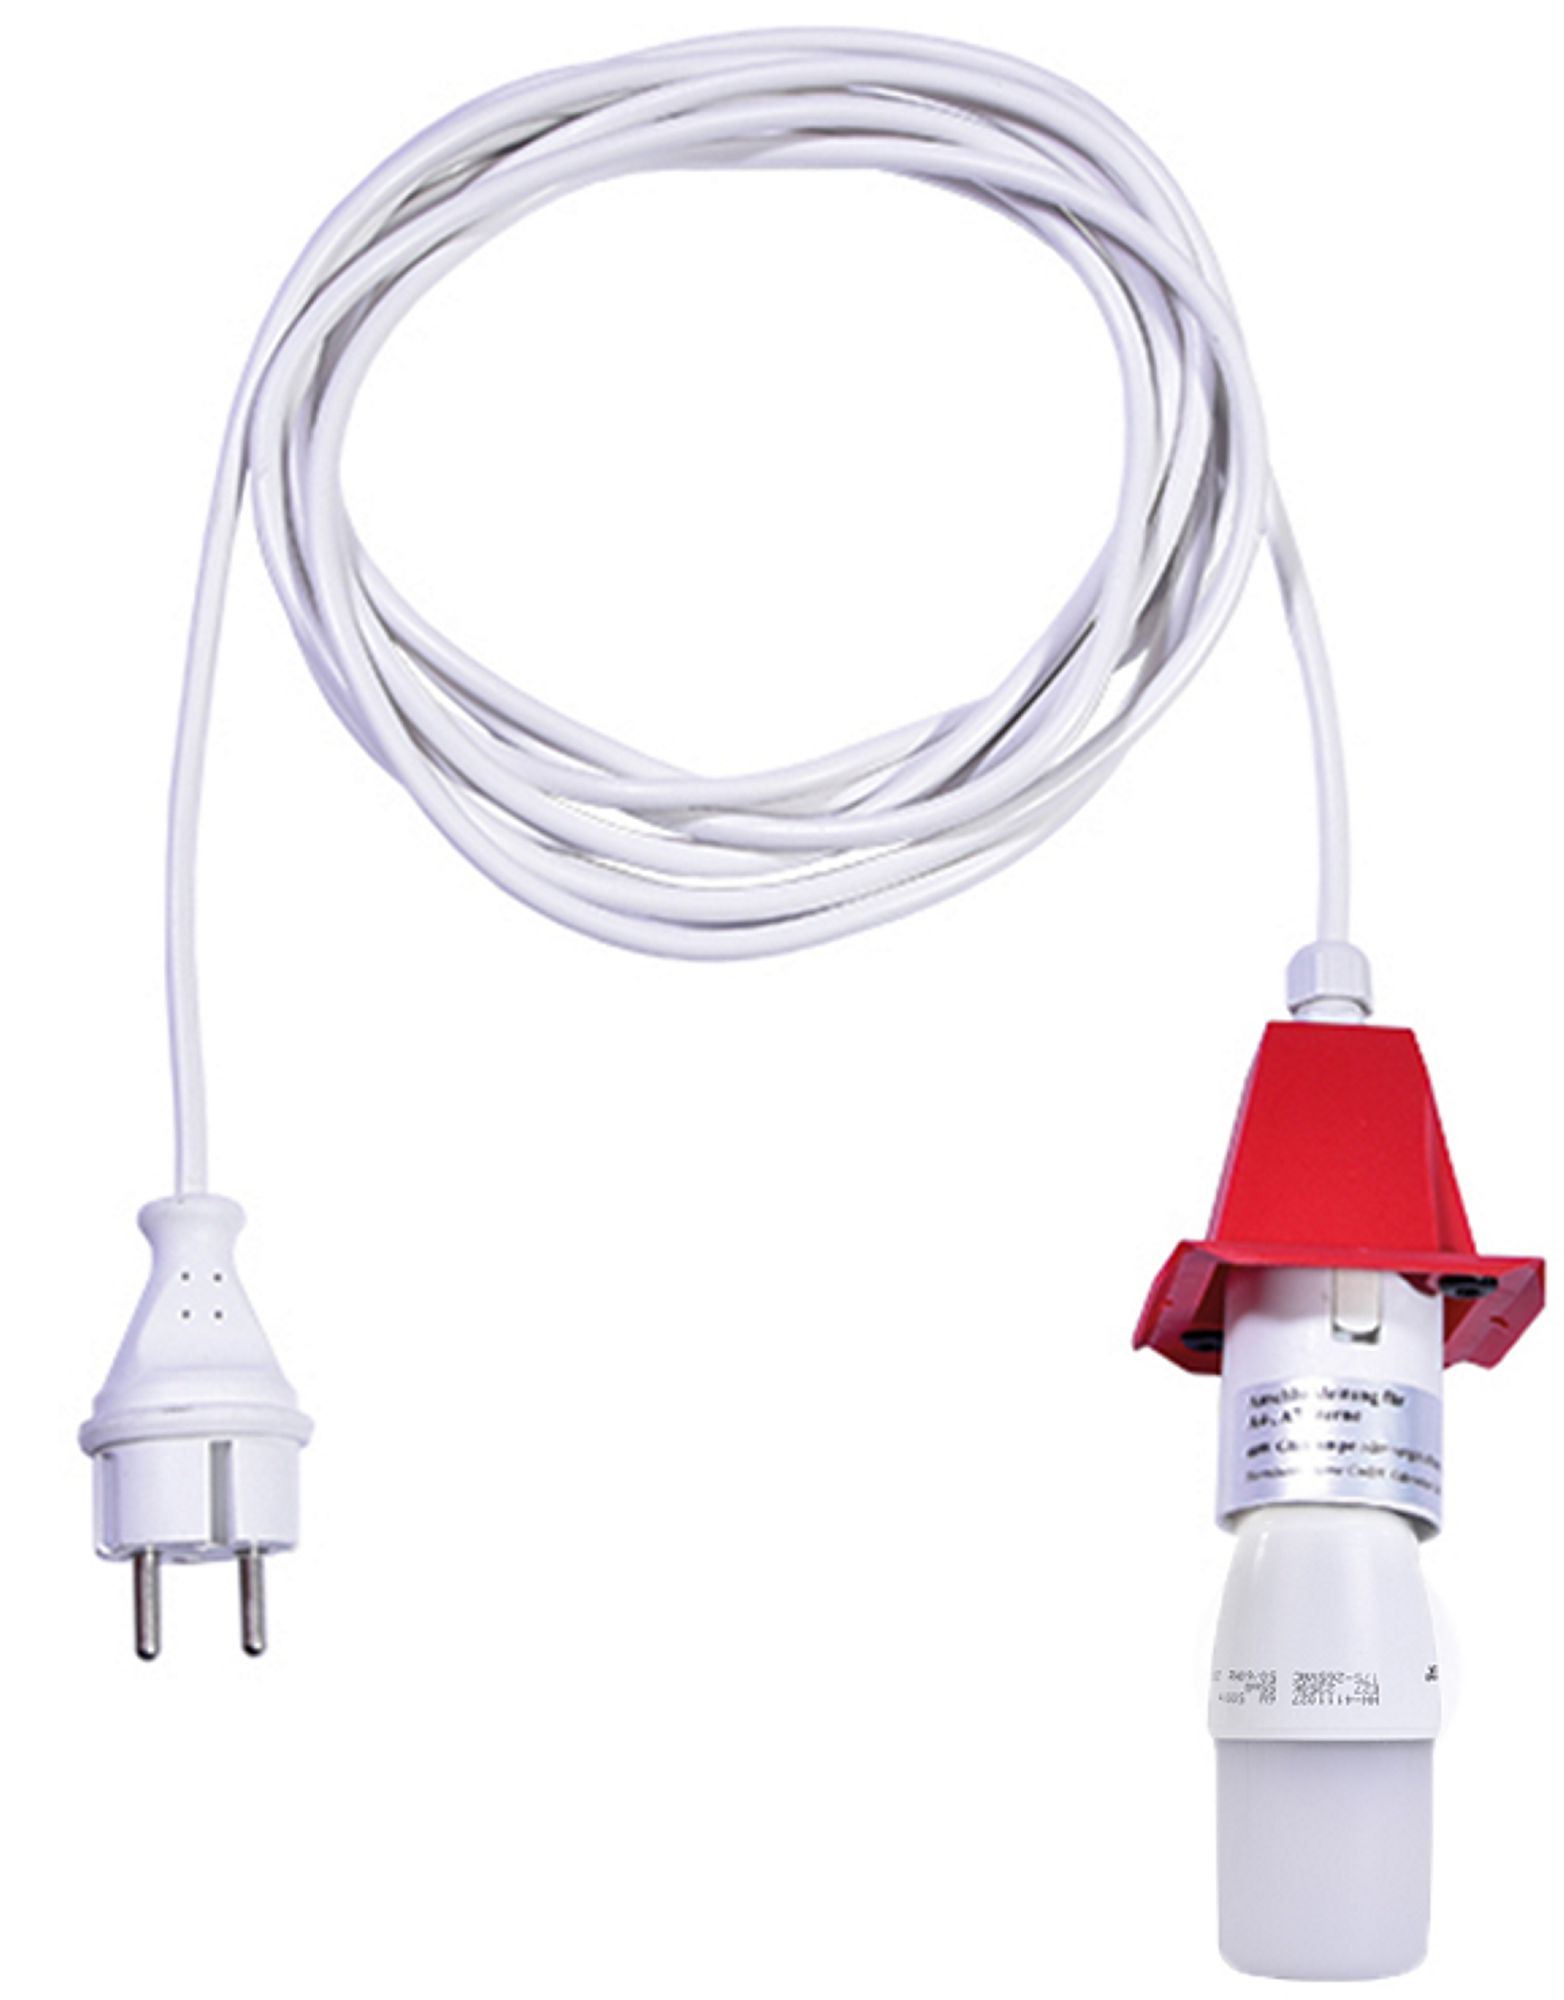 Herrnhuter Kabel für A4/A7 - weißes Kabel 5m rot